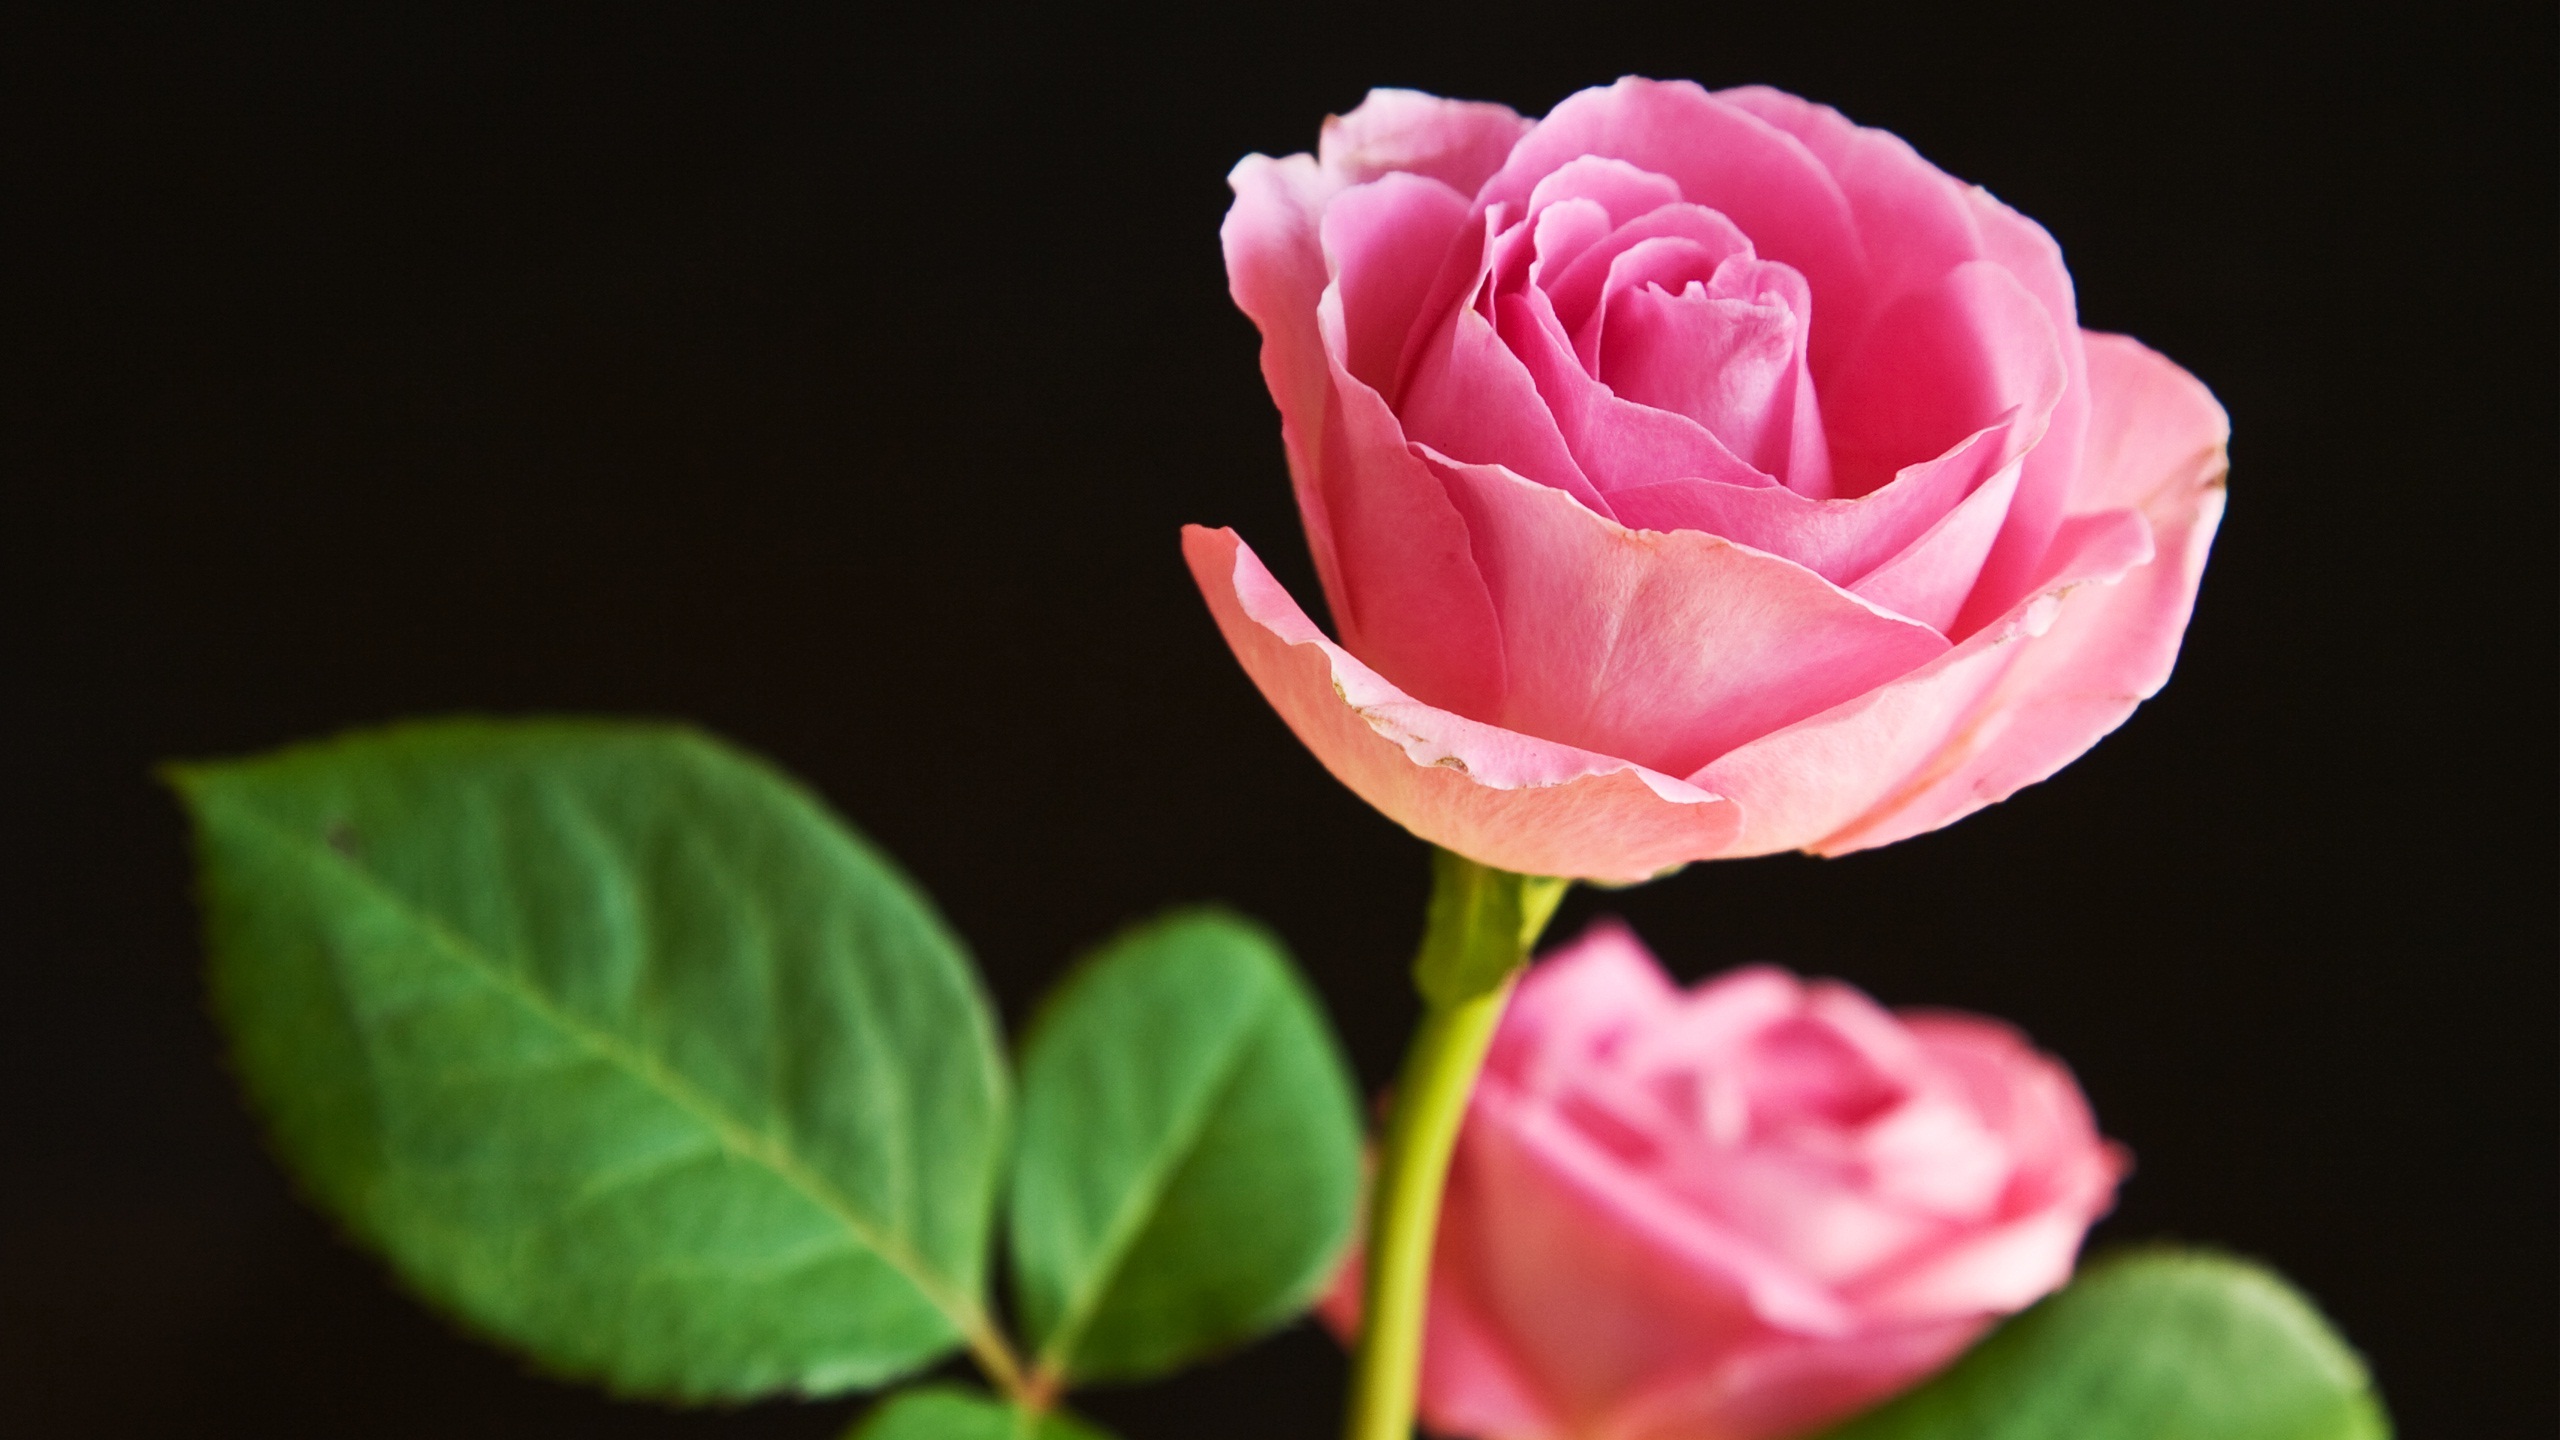 rose flower wallpaper hd descarga gratuita,flor,planta floreciendo,rosas de jardín,pétalo,rosado